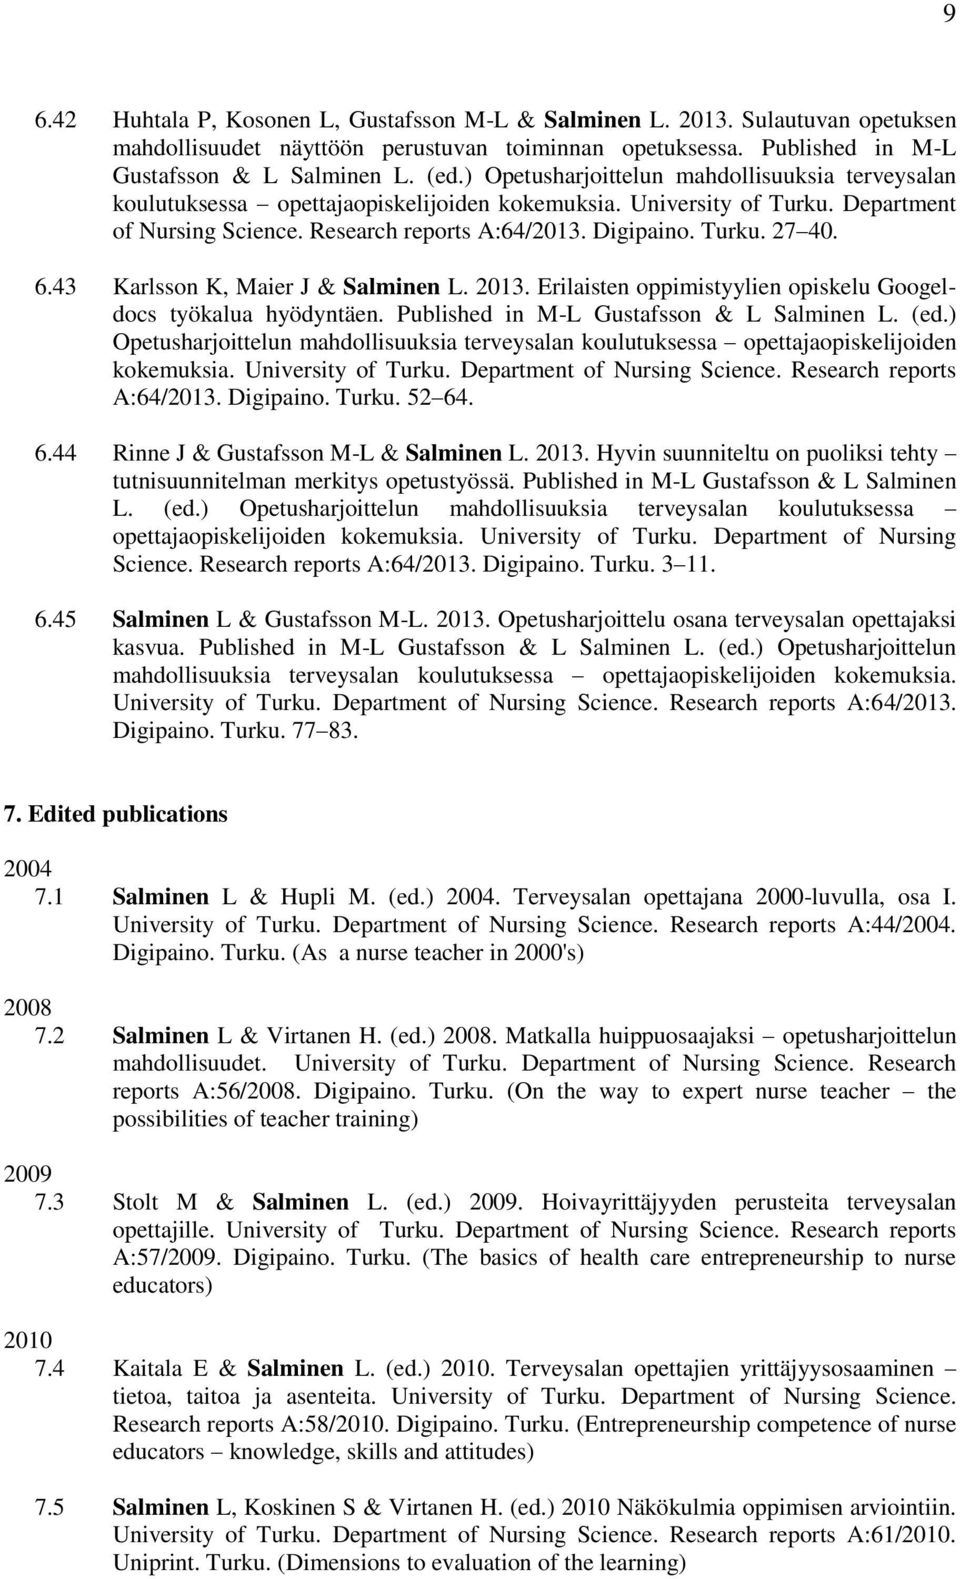 6.43 Karlsson K, Maier J & Salminen L. 2013. Erilaisten oppimistyylien opiskelu Googeldocs työkalua hyödyntäen. Published in M-L Gustafsson & L Salminen L. (ed.